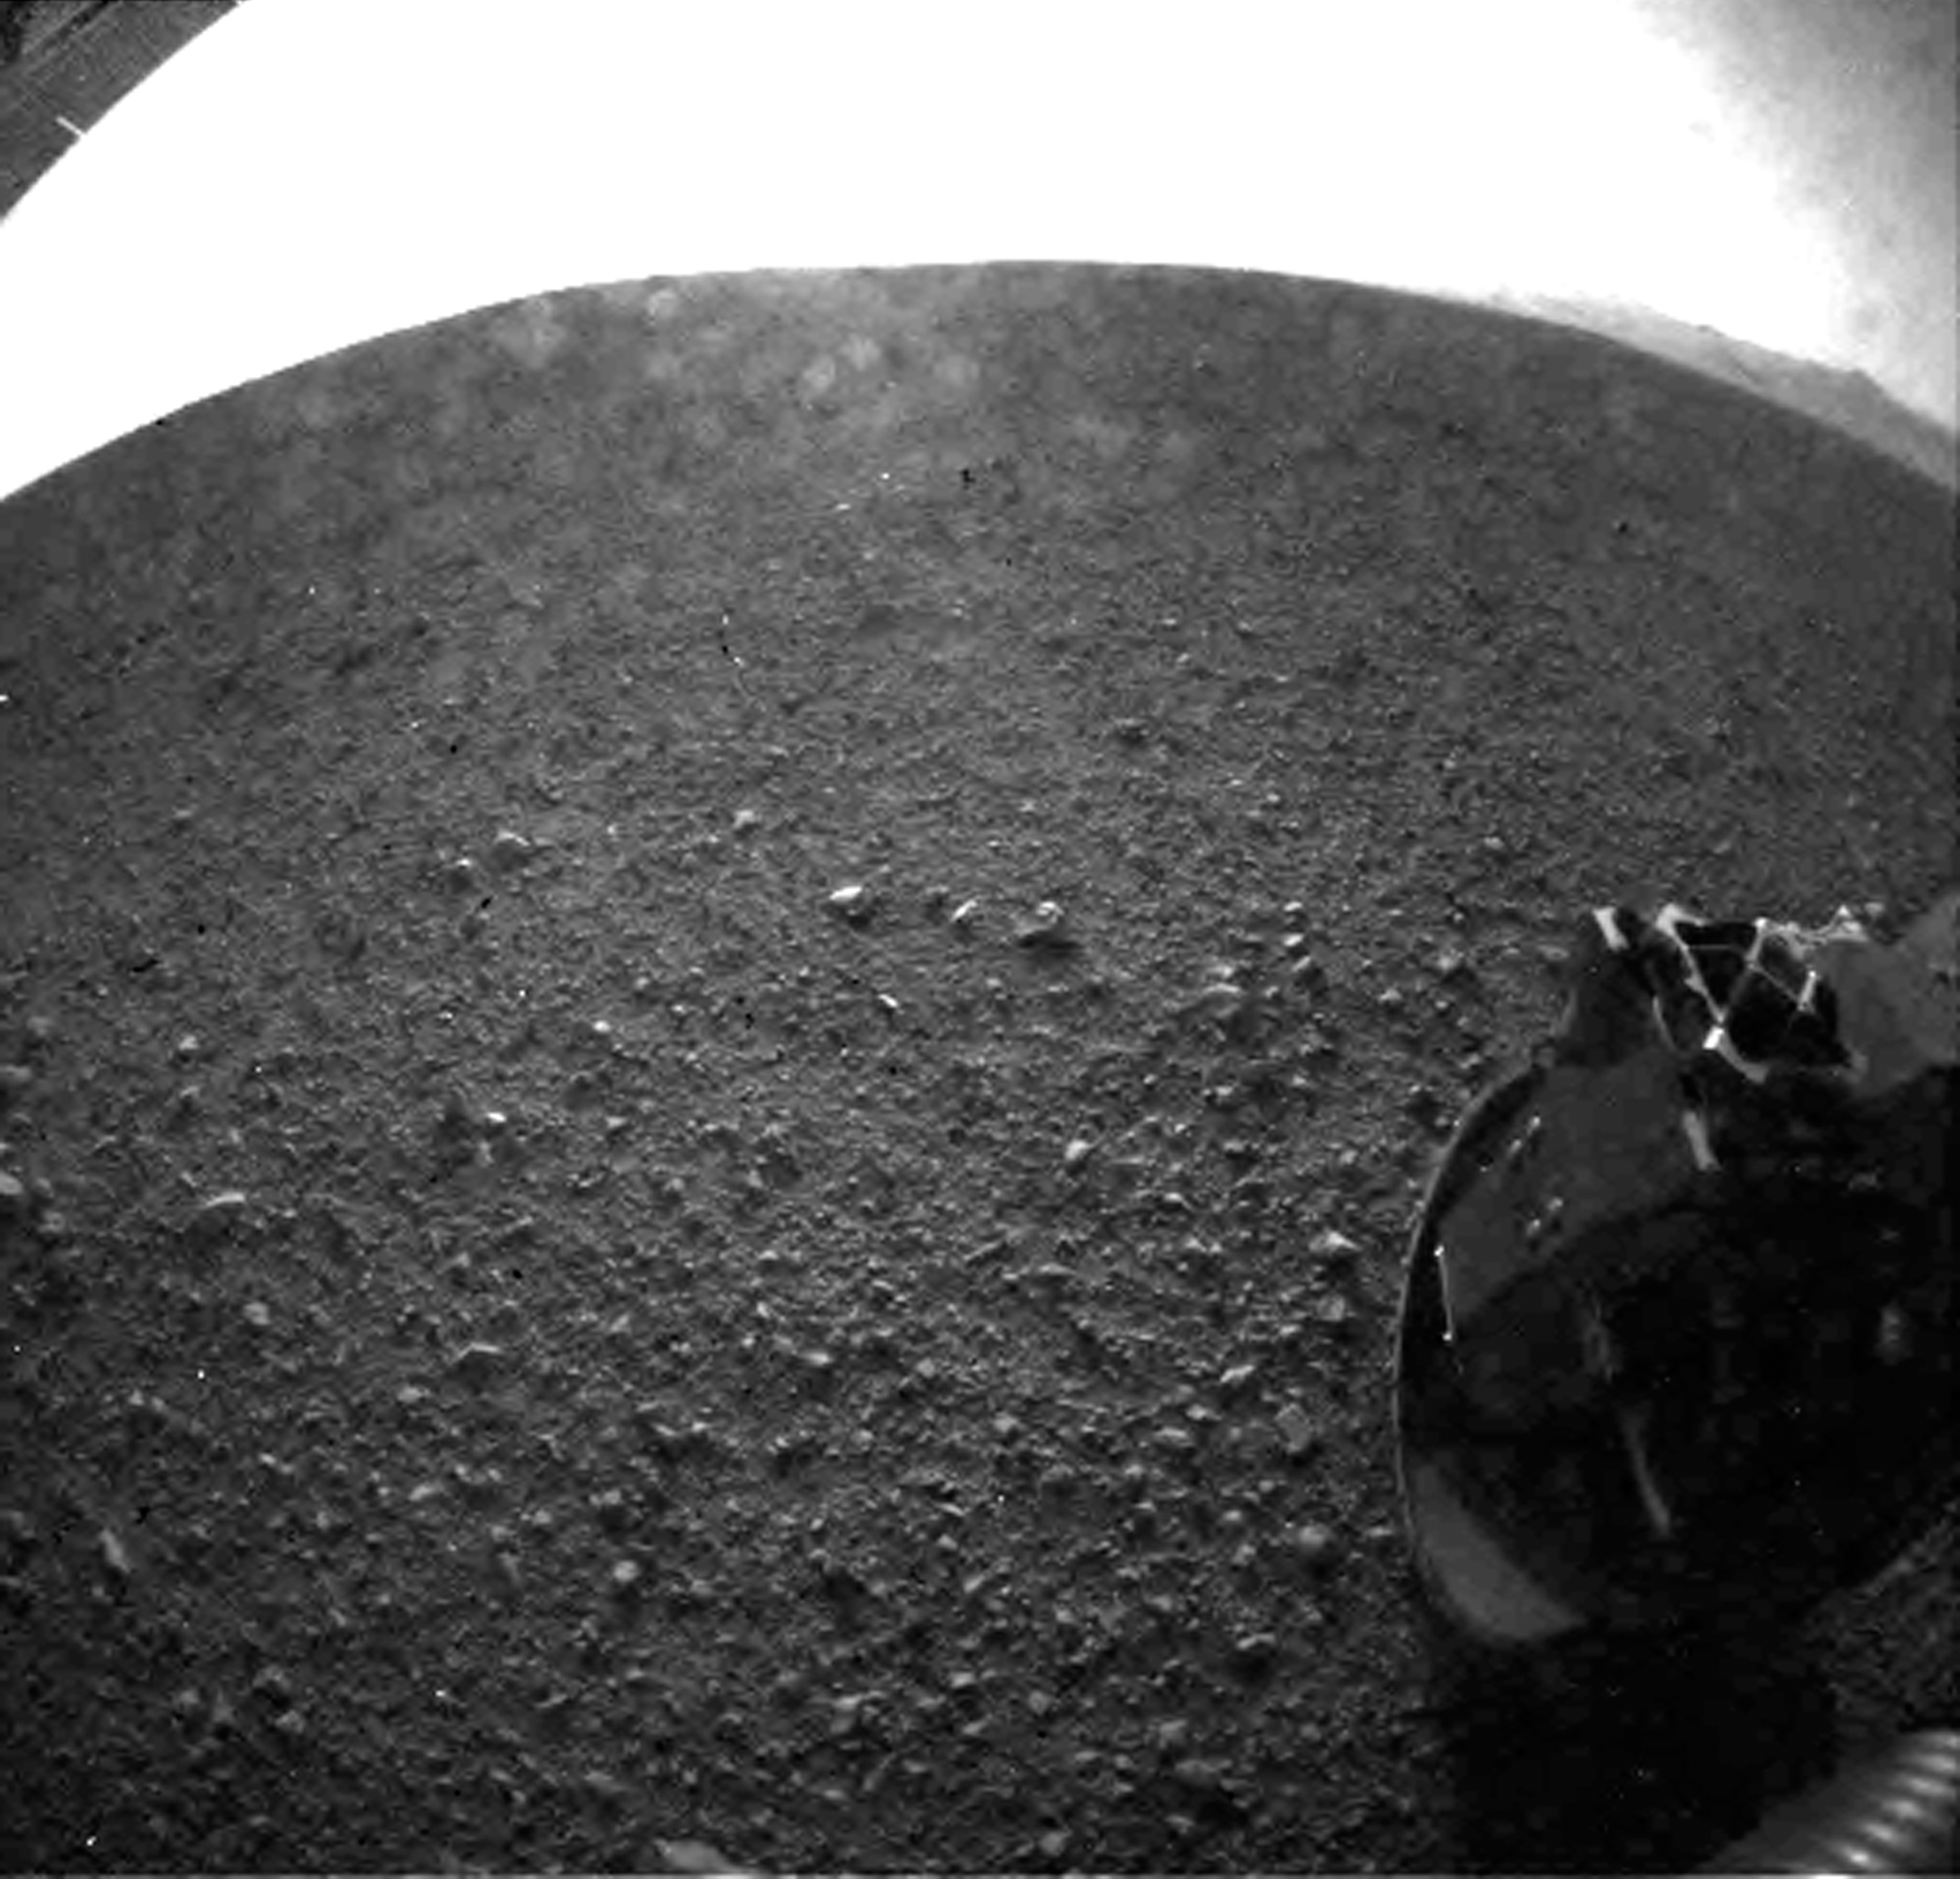 Lesz még ennél jobb is – az egyik első fotó, amit a Curiosity készített a Marson, a halszemoptikás kamerájával (2012. augusztus 6.)